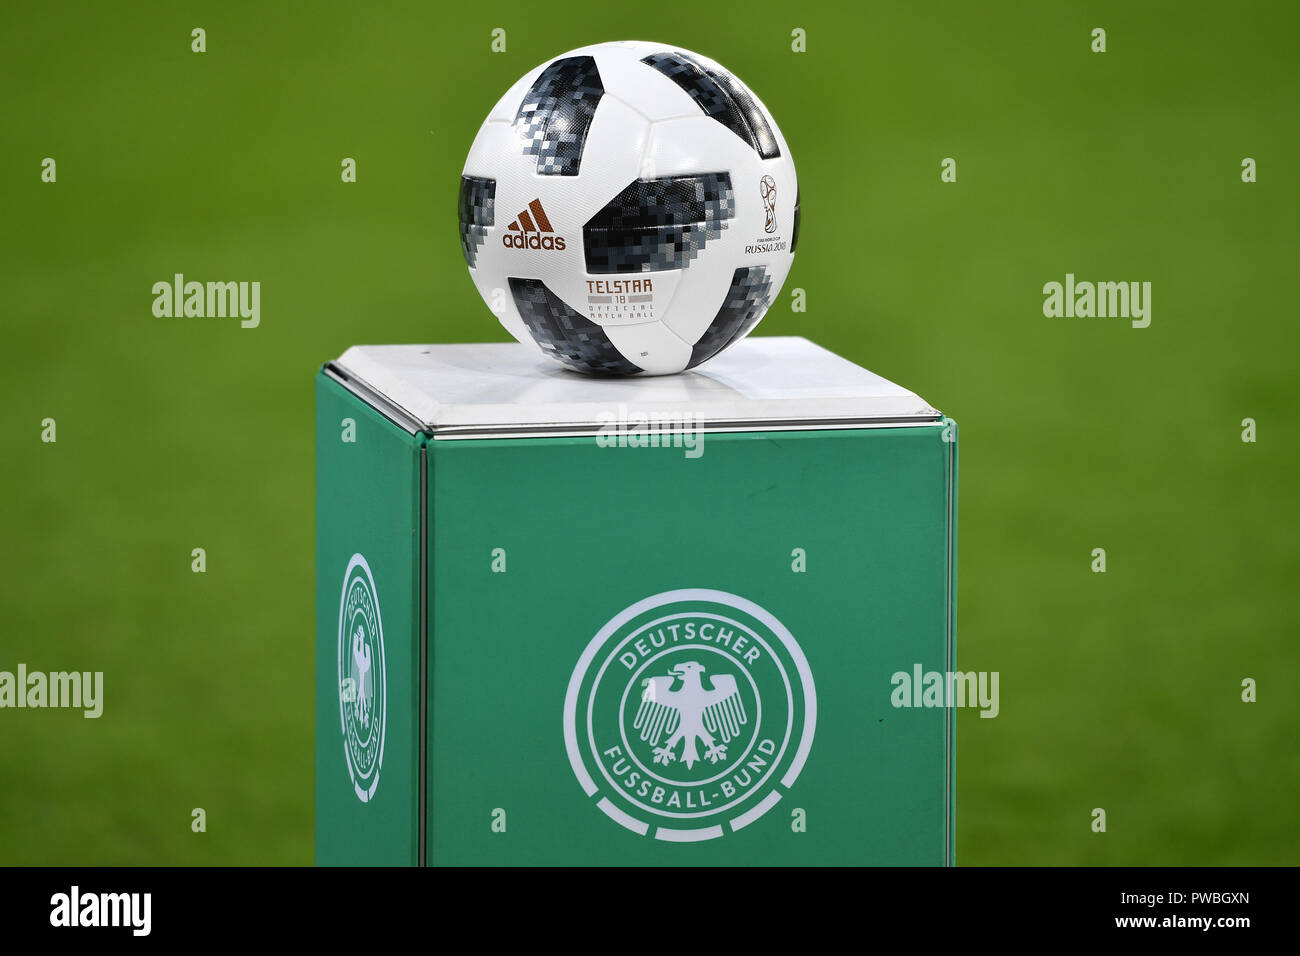 Ingolstadt, Deutschland. 12 2018. característica: adidas TELSTAR Spielball, funcionario Spielball, yace sobre un pedestal con la DFB , el emblema. Fútbol U-21 Laenderspiel.EM Calificación, Alemania (GER) - Noruega (NOR)